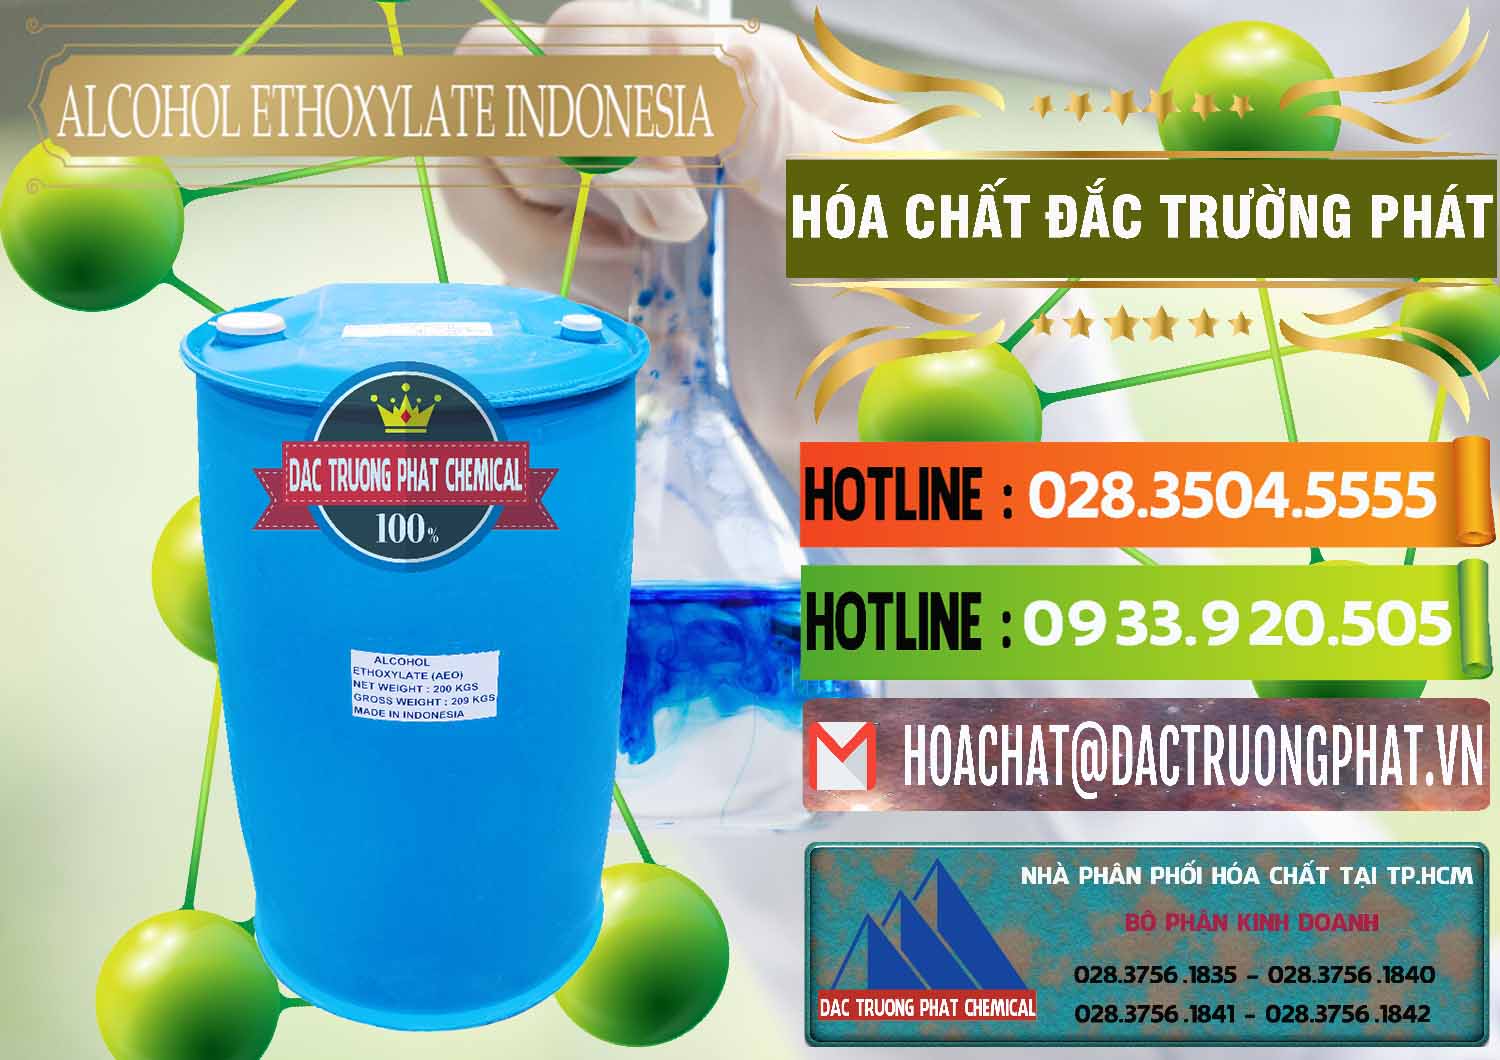 Nơi bán ( cung cấp ) Alcohol Ethoxylate Indonesia - 0308 - Chuyên cung cấp & phân phối hóa chất tại TP.HCM - cungcaphoachat.com.vn